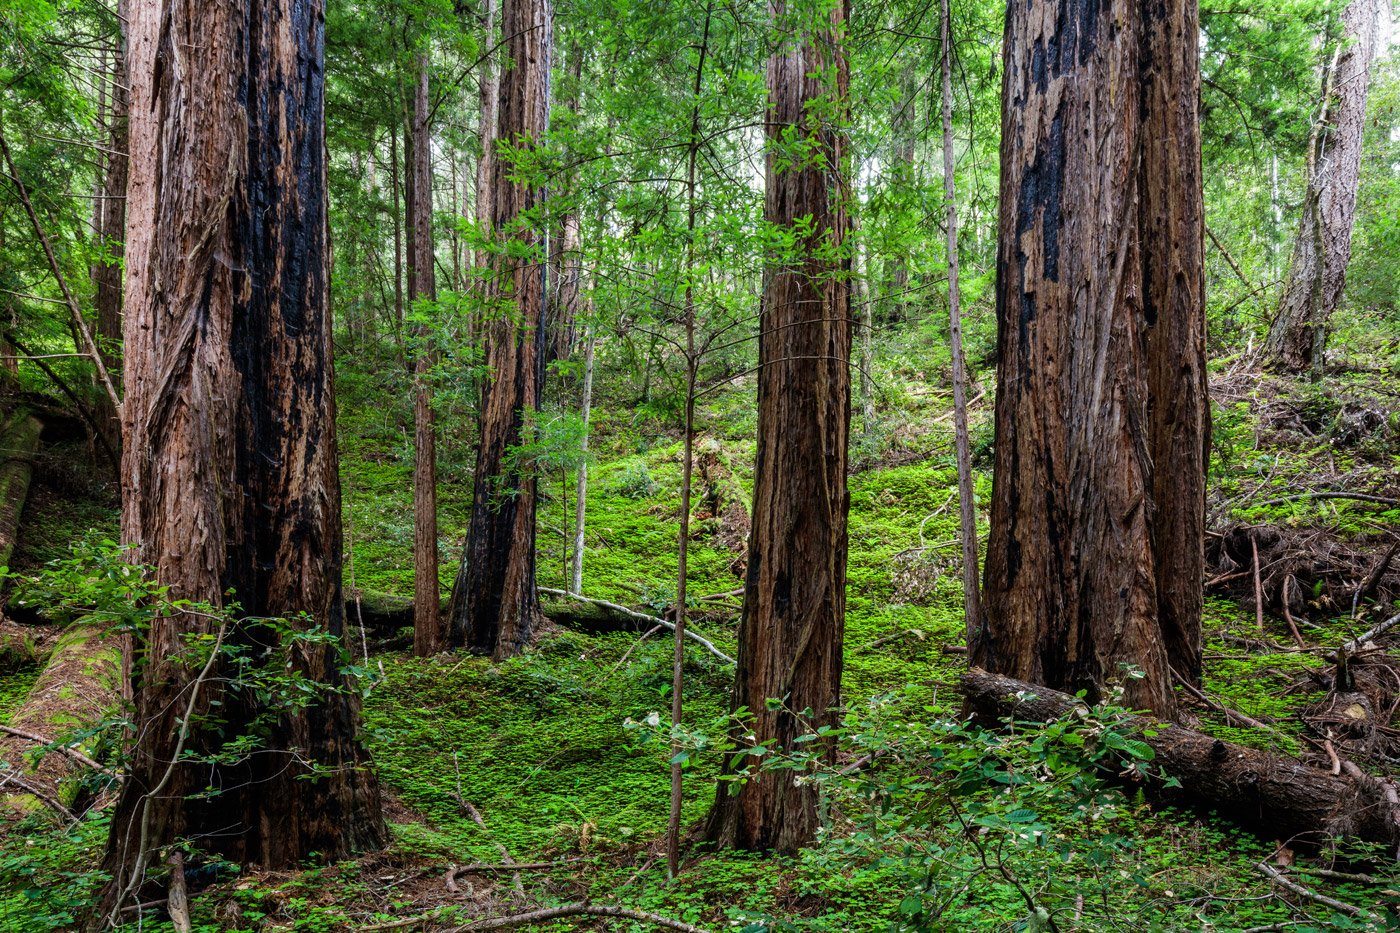 Redwoods nestled in a bed of sorrels